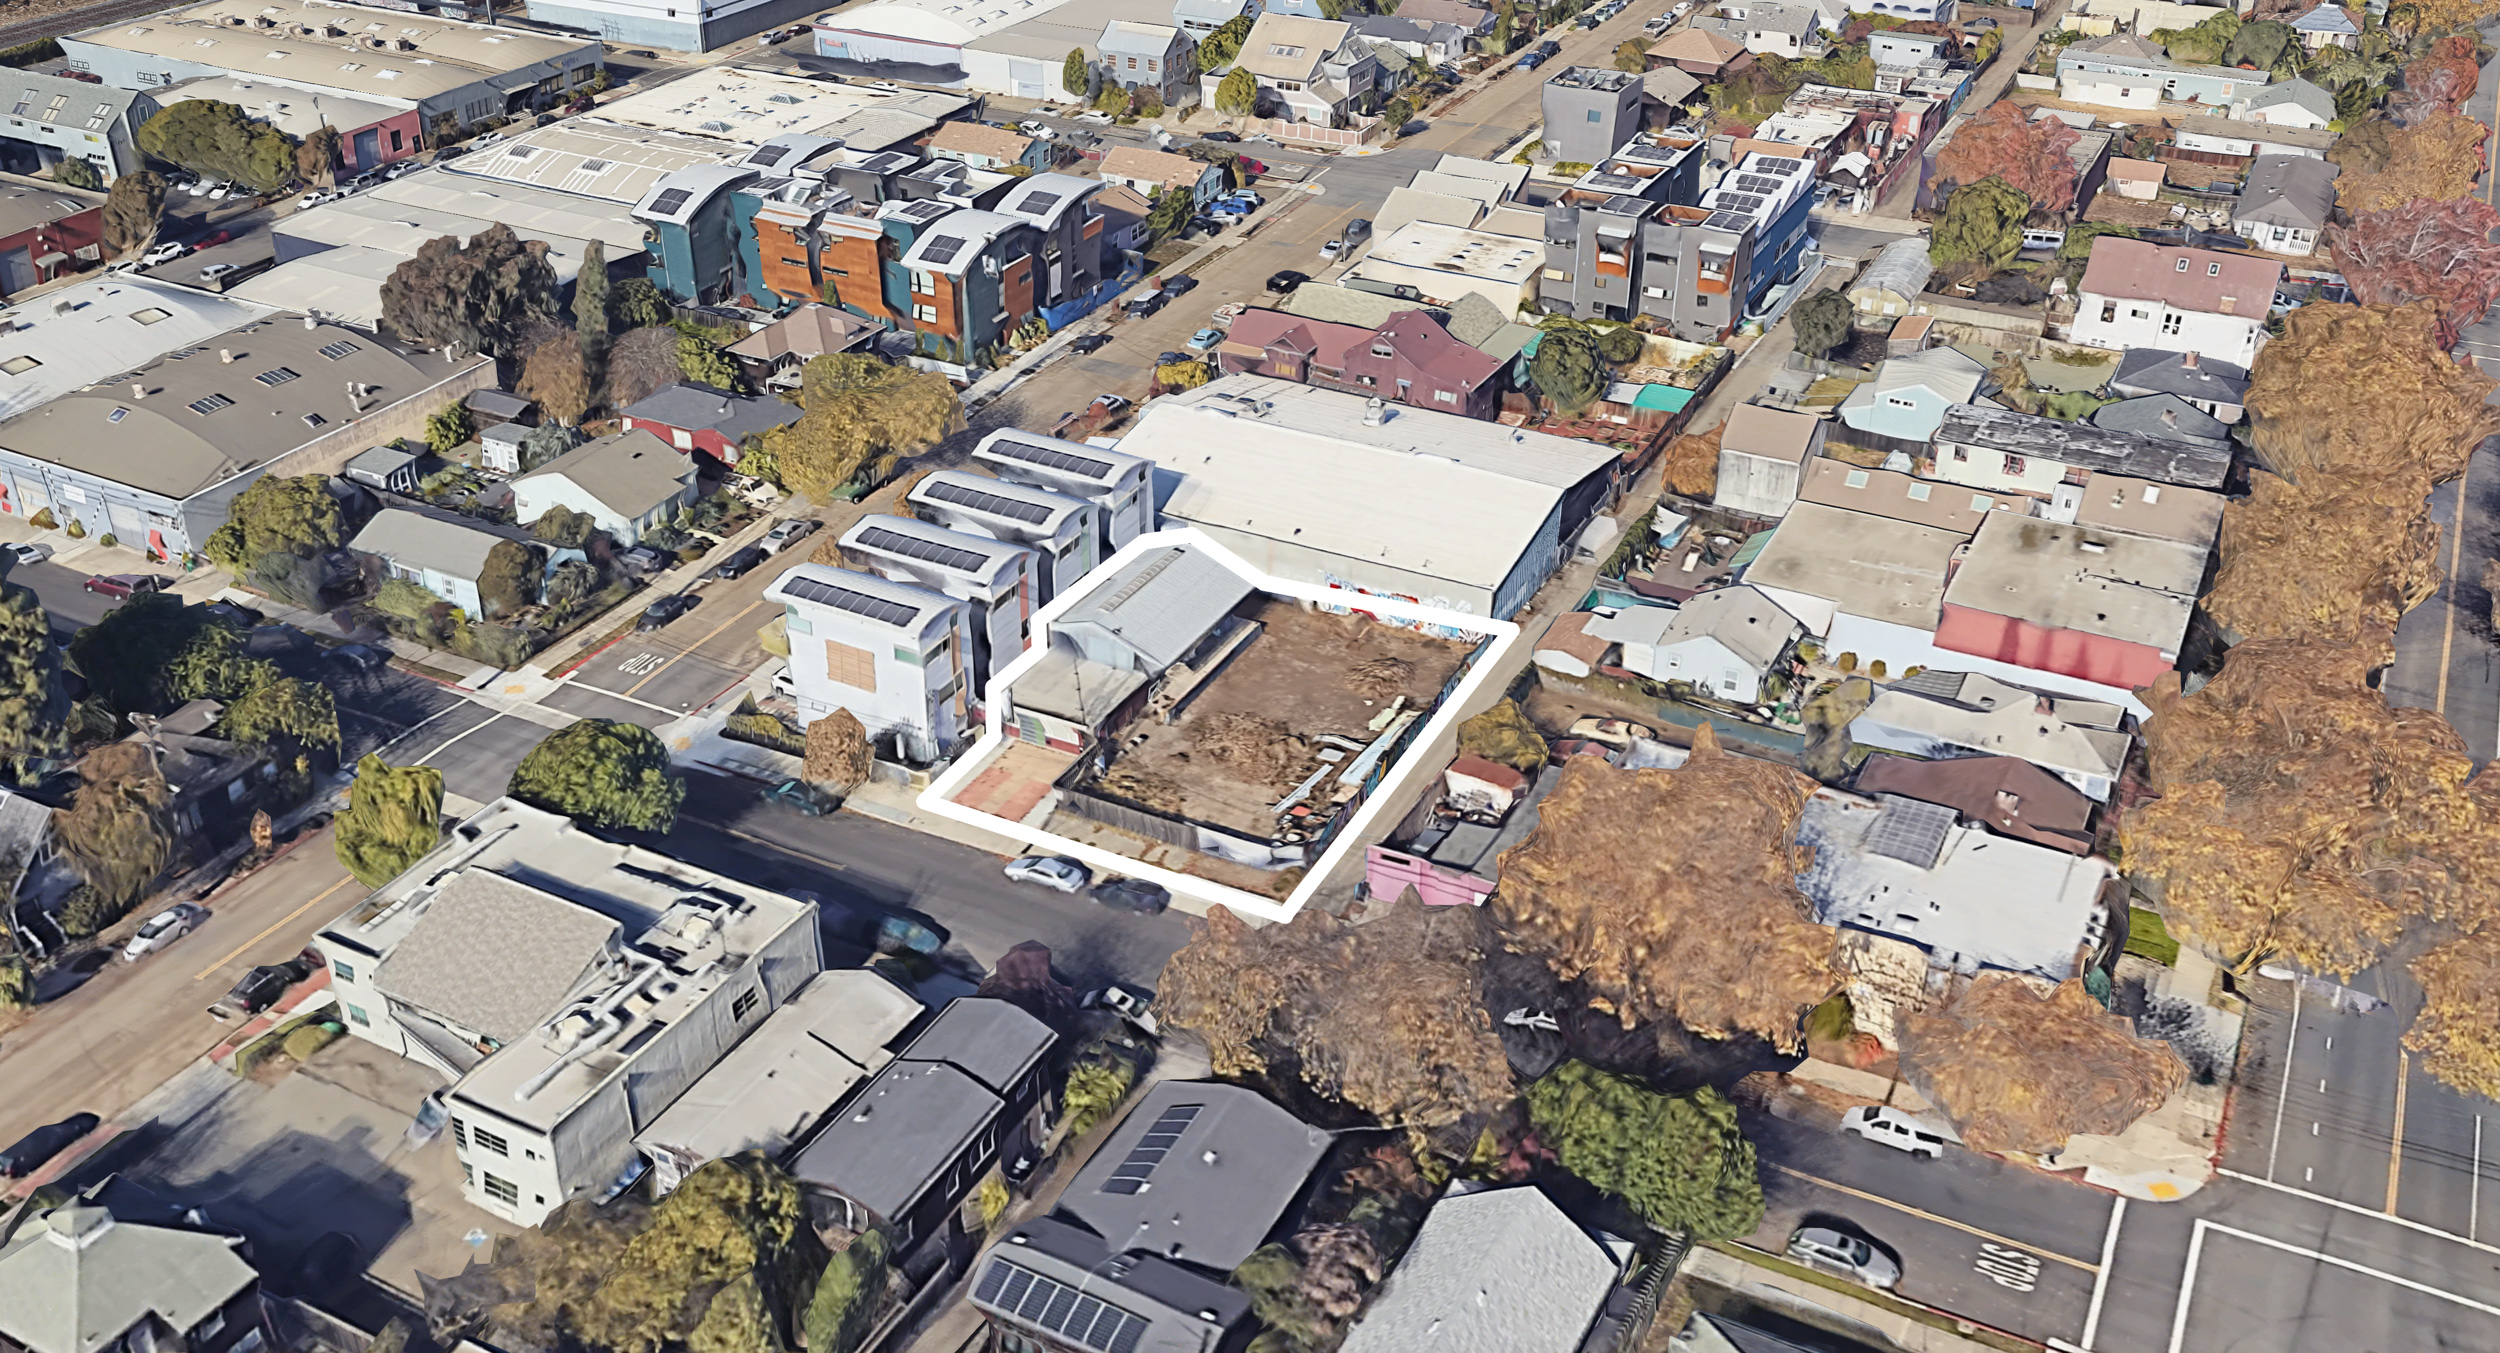 805 Jones Street, image via Google Satellite